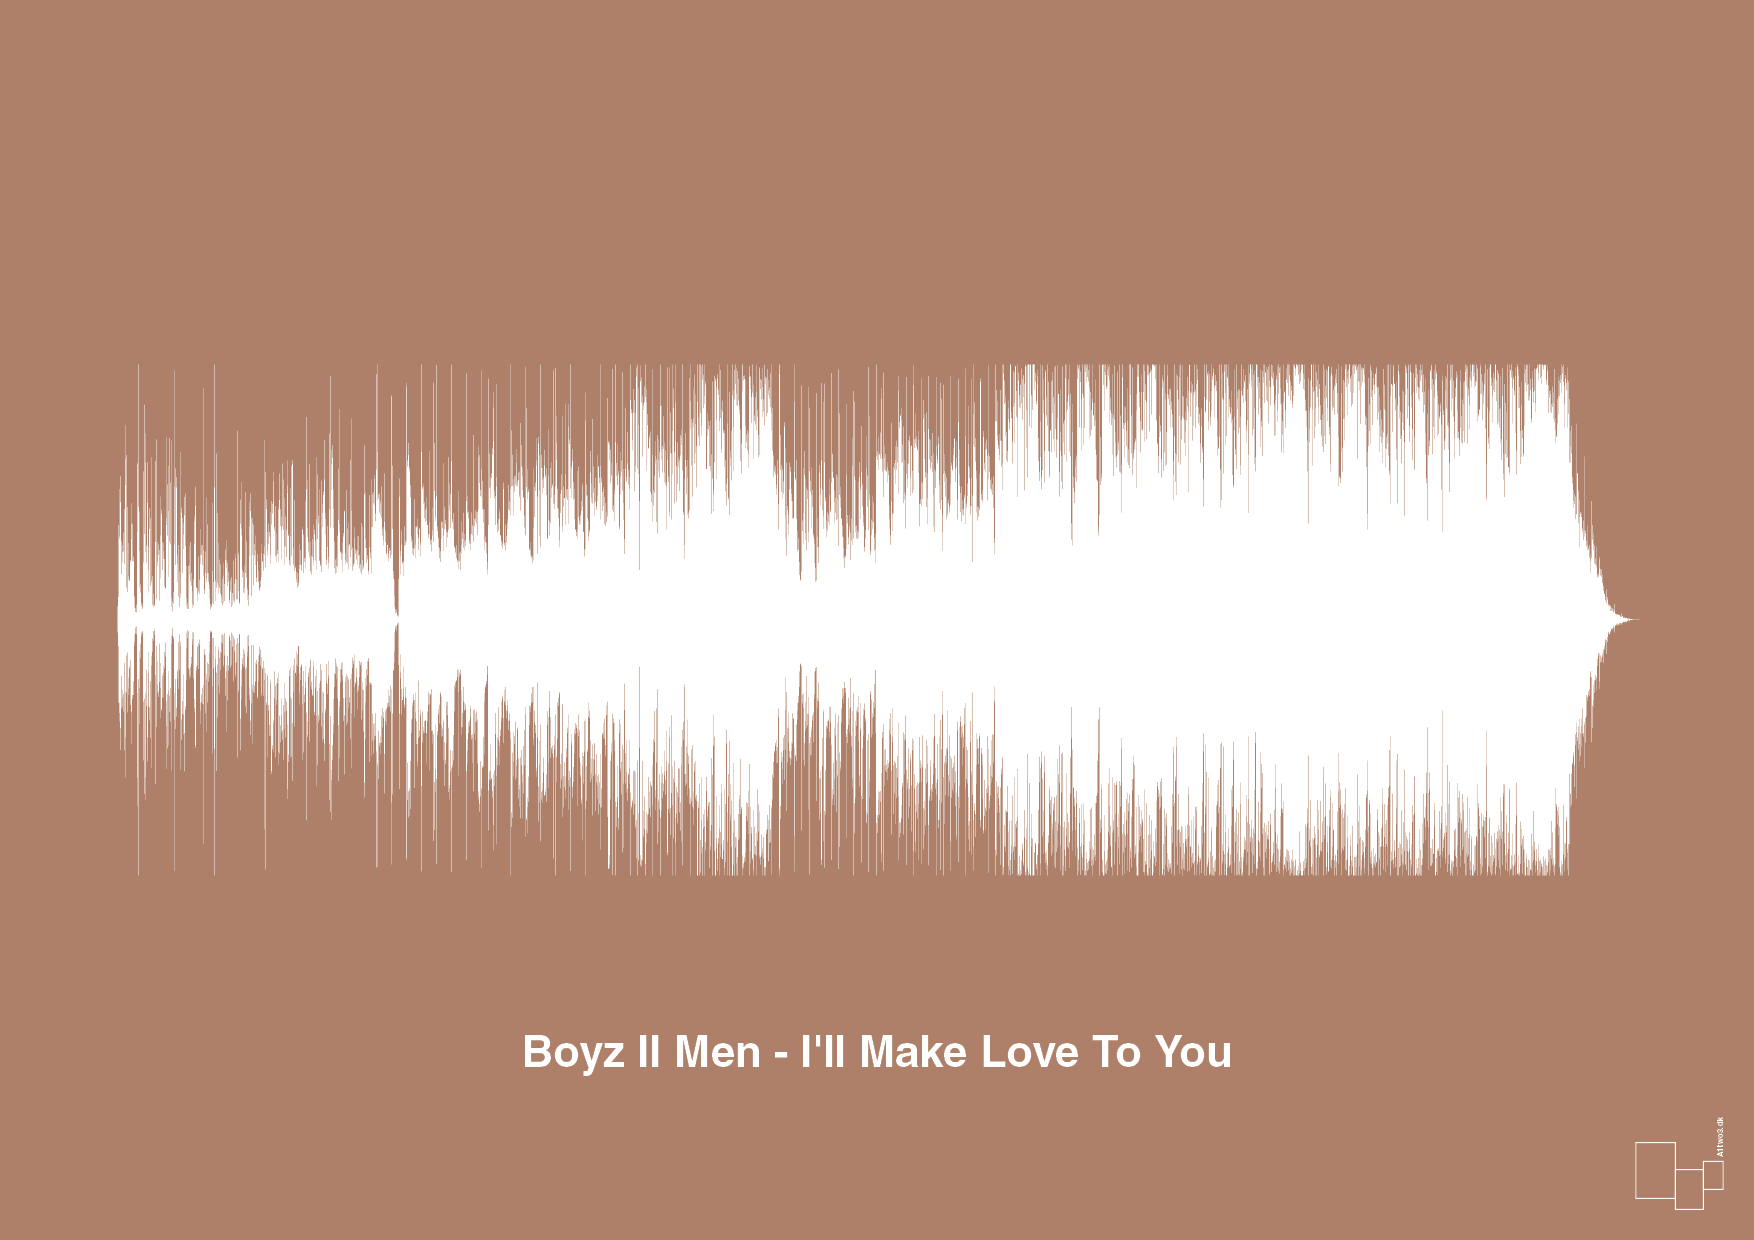 boyz II men - i'll make love to you - Plakat med Musik i Cider Spice